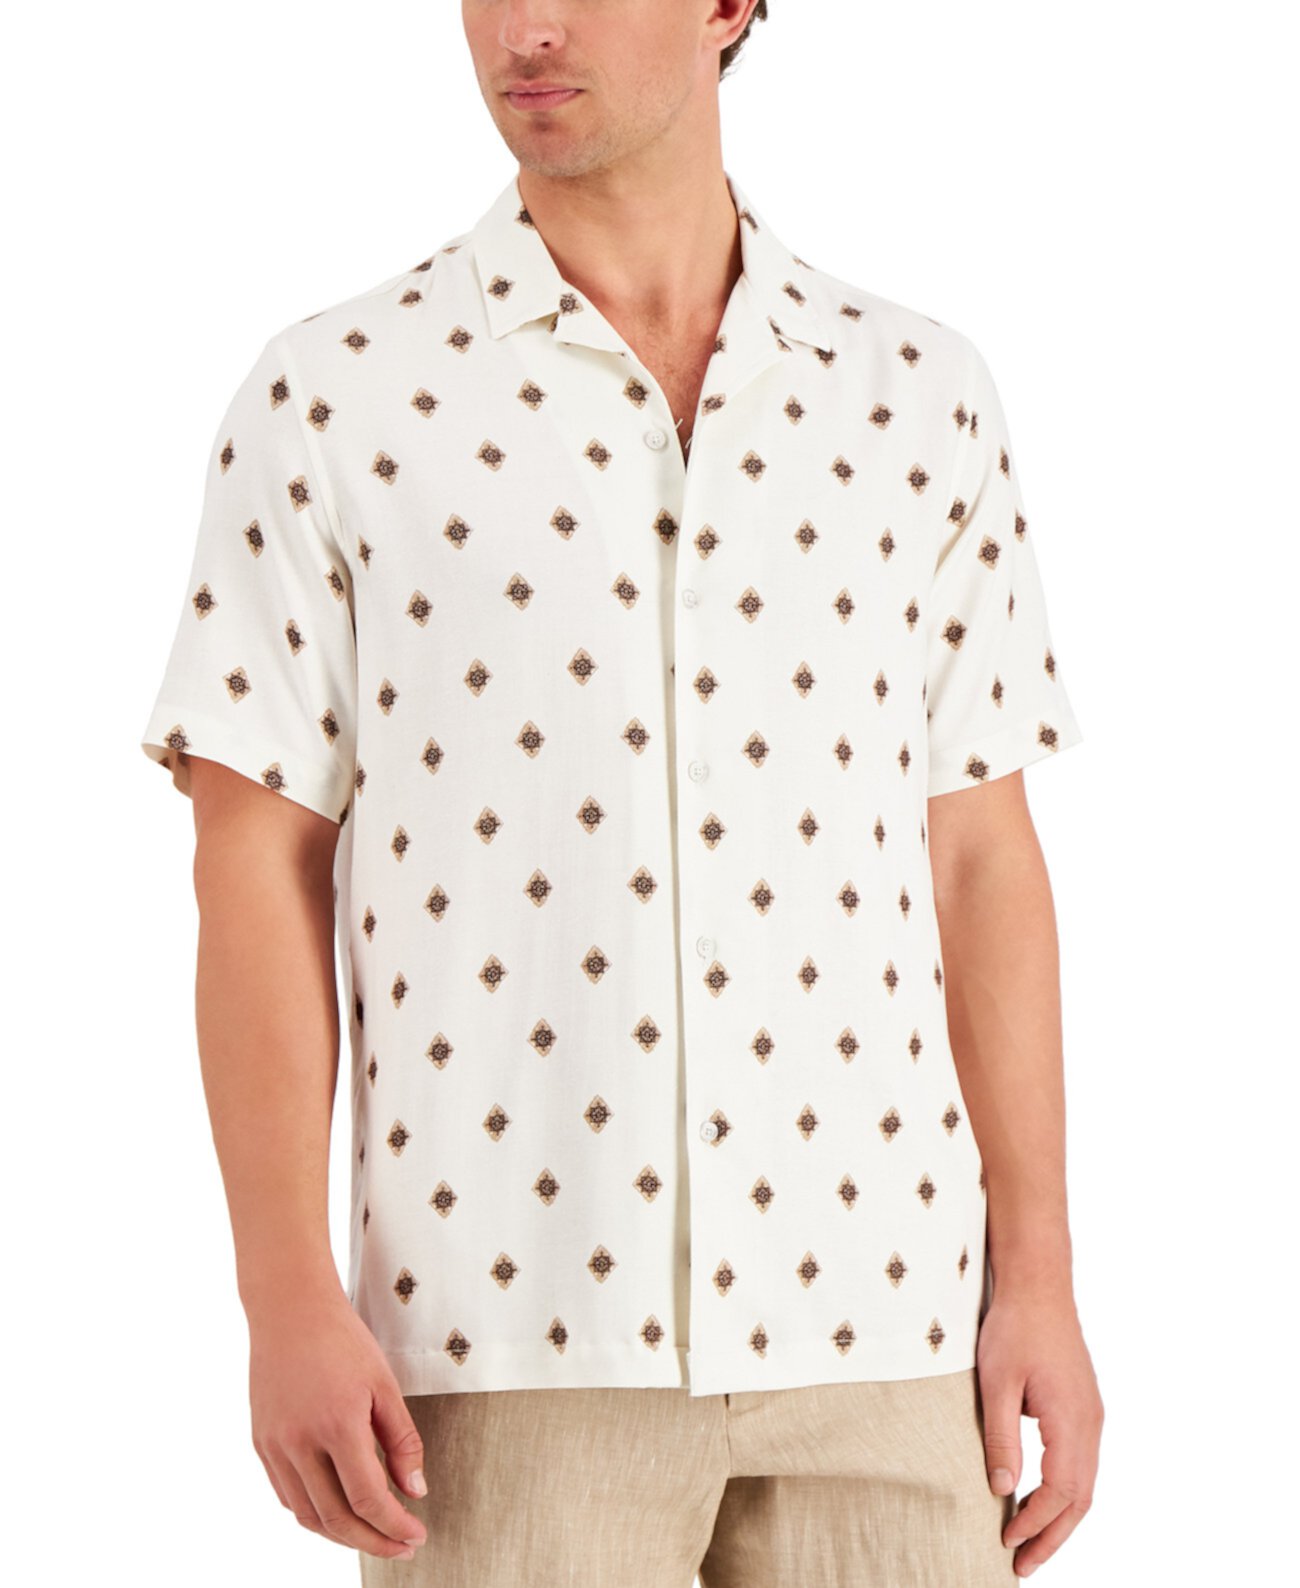 Мужская рубашка с принтом Tallaso, созданная для Macy's Tasso Elba